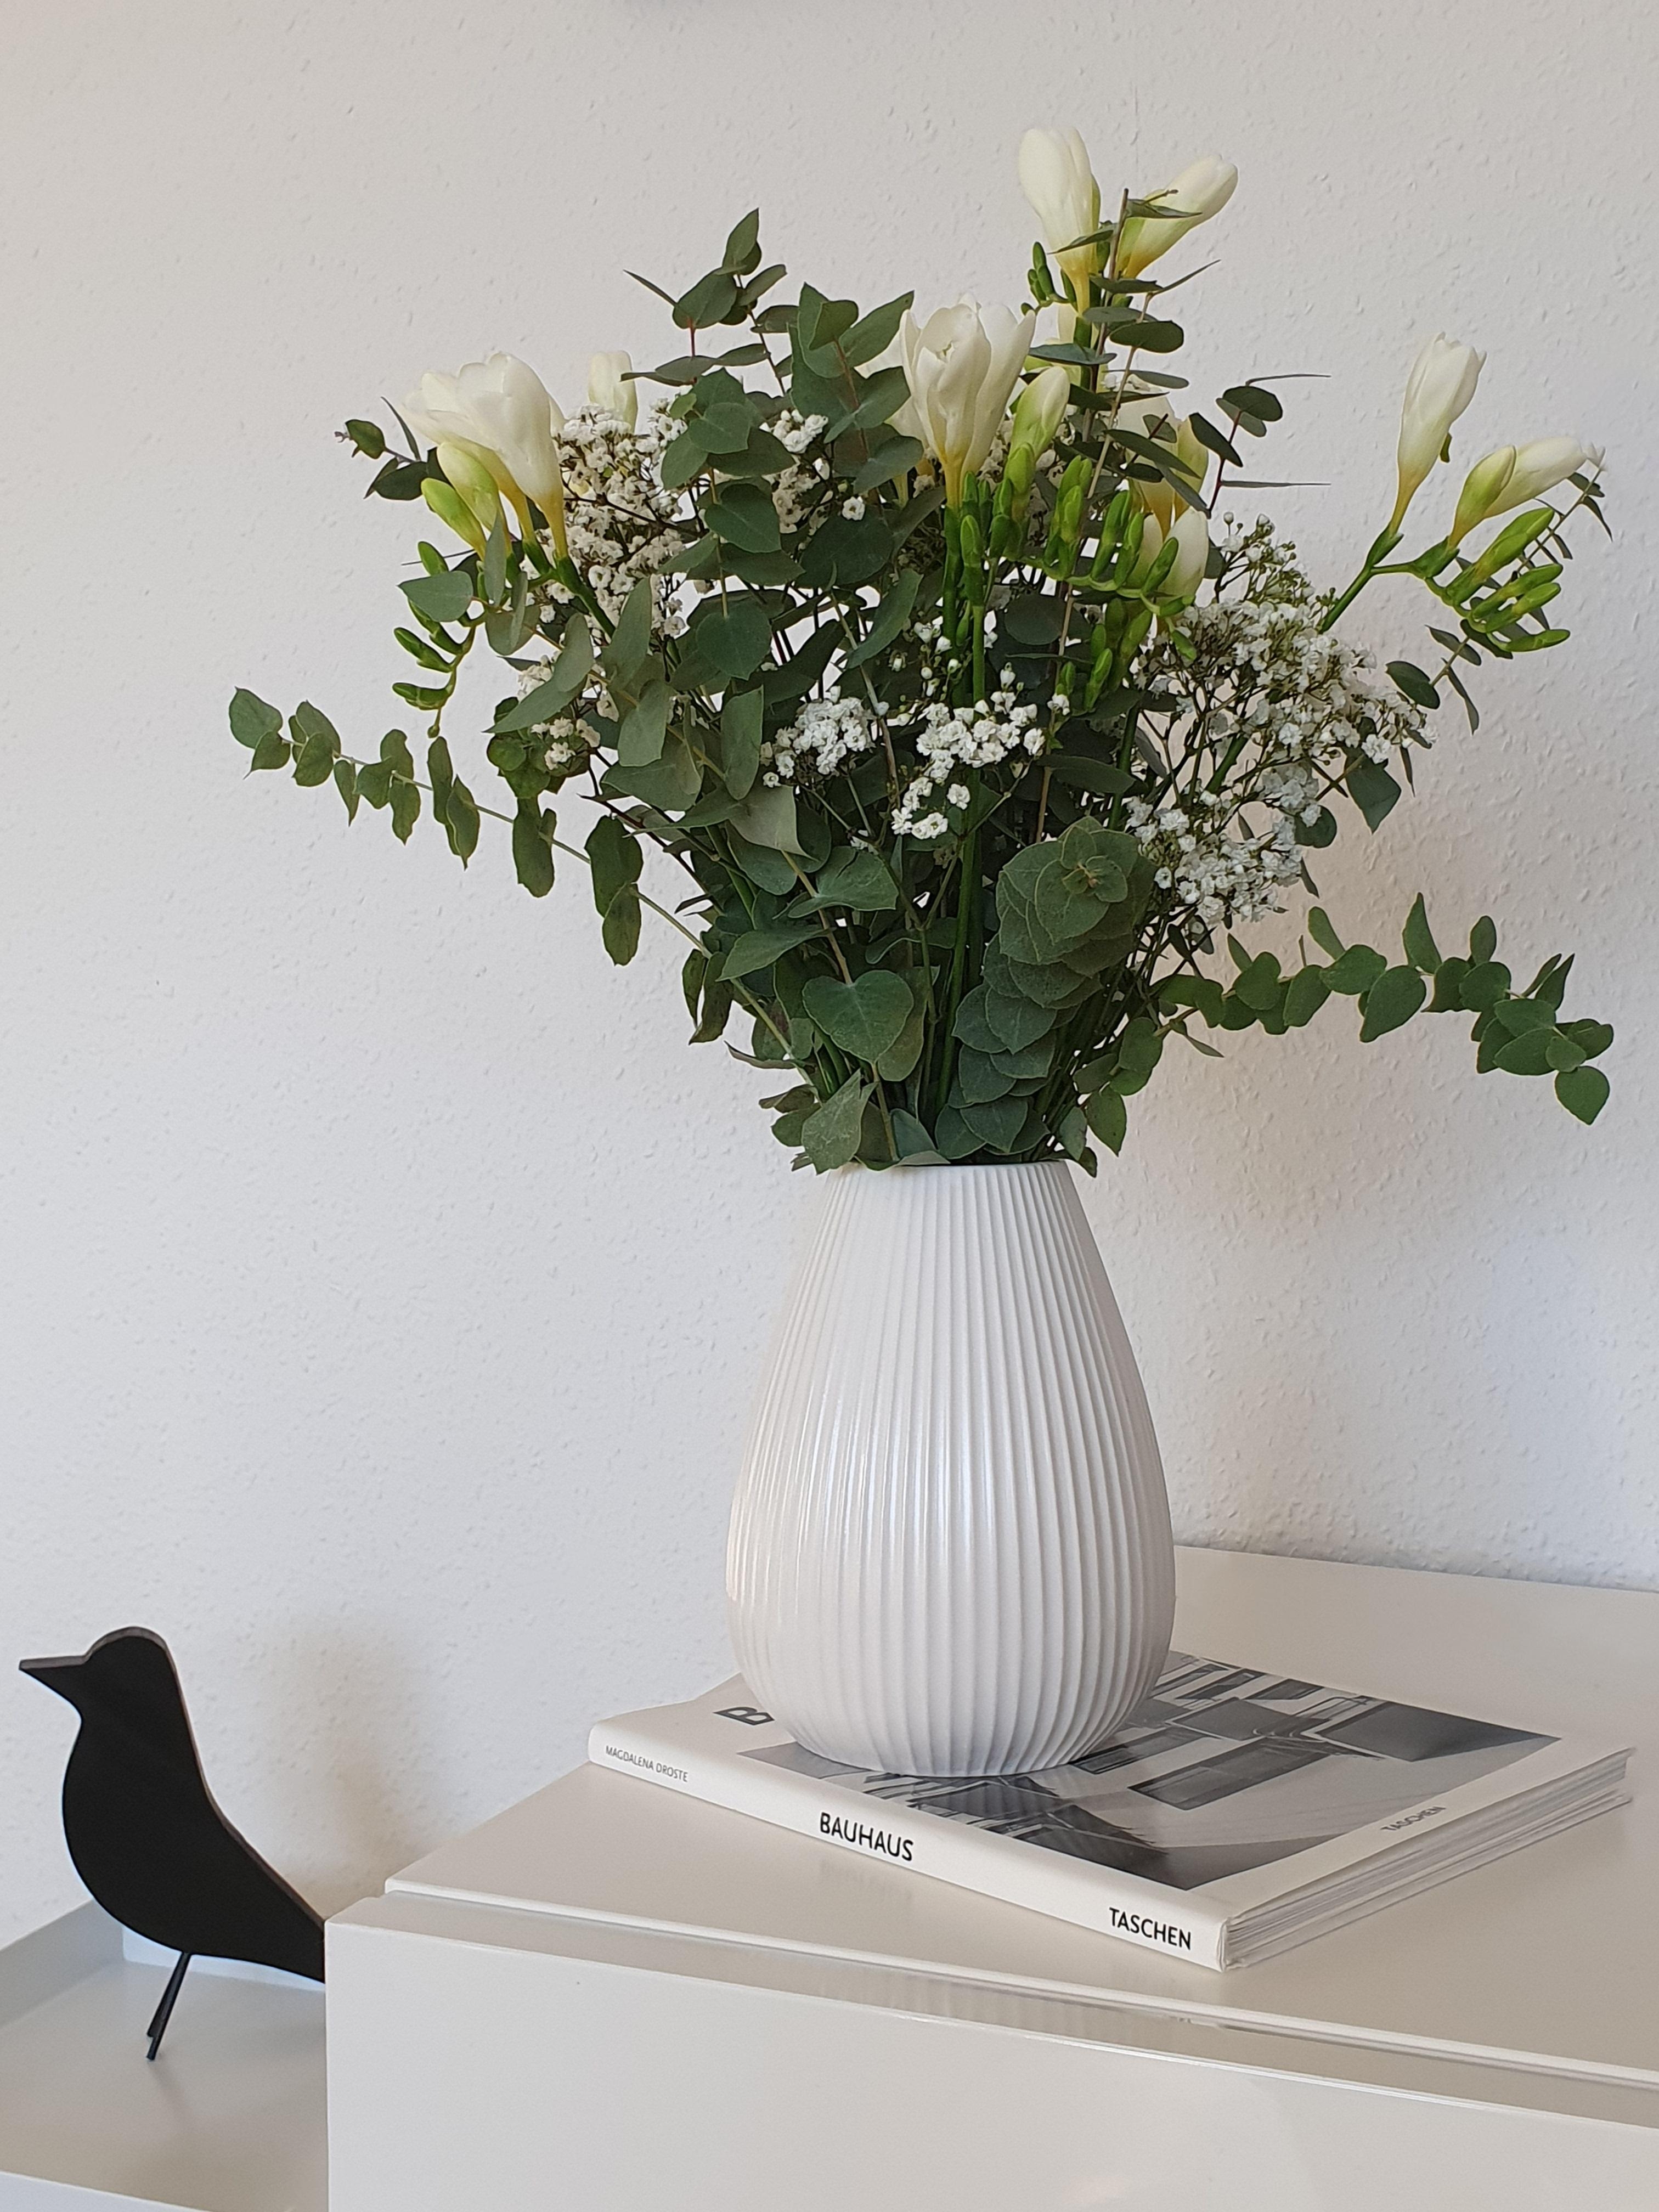 Freshflowers und eine neue Vase gab es auch 🖤
#freshflowers #freshflowerfriday #eukalyptus #vasenliebe #vase
